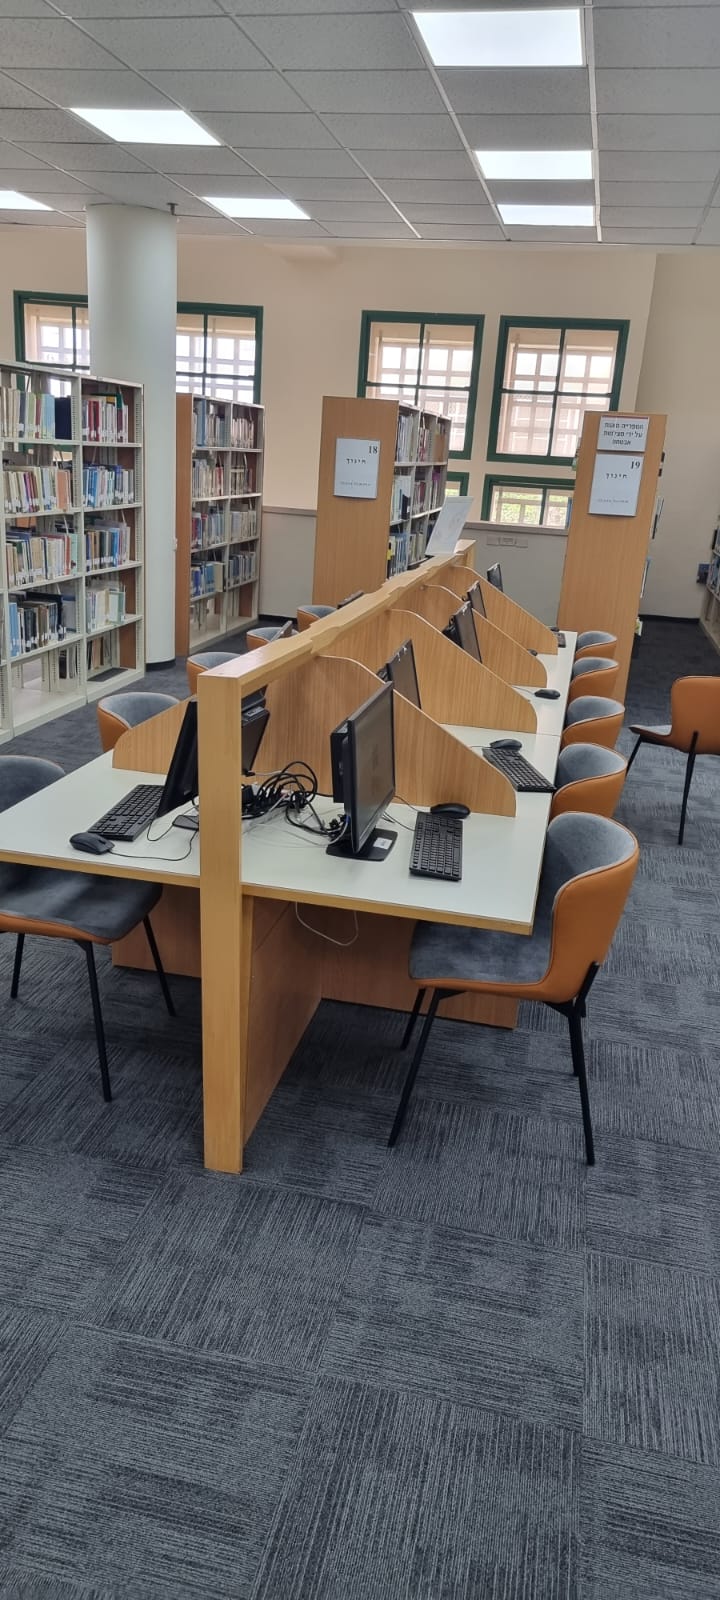 הספרייה מתחדשת